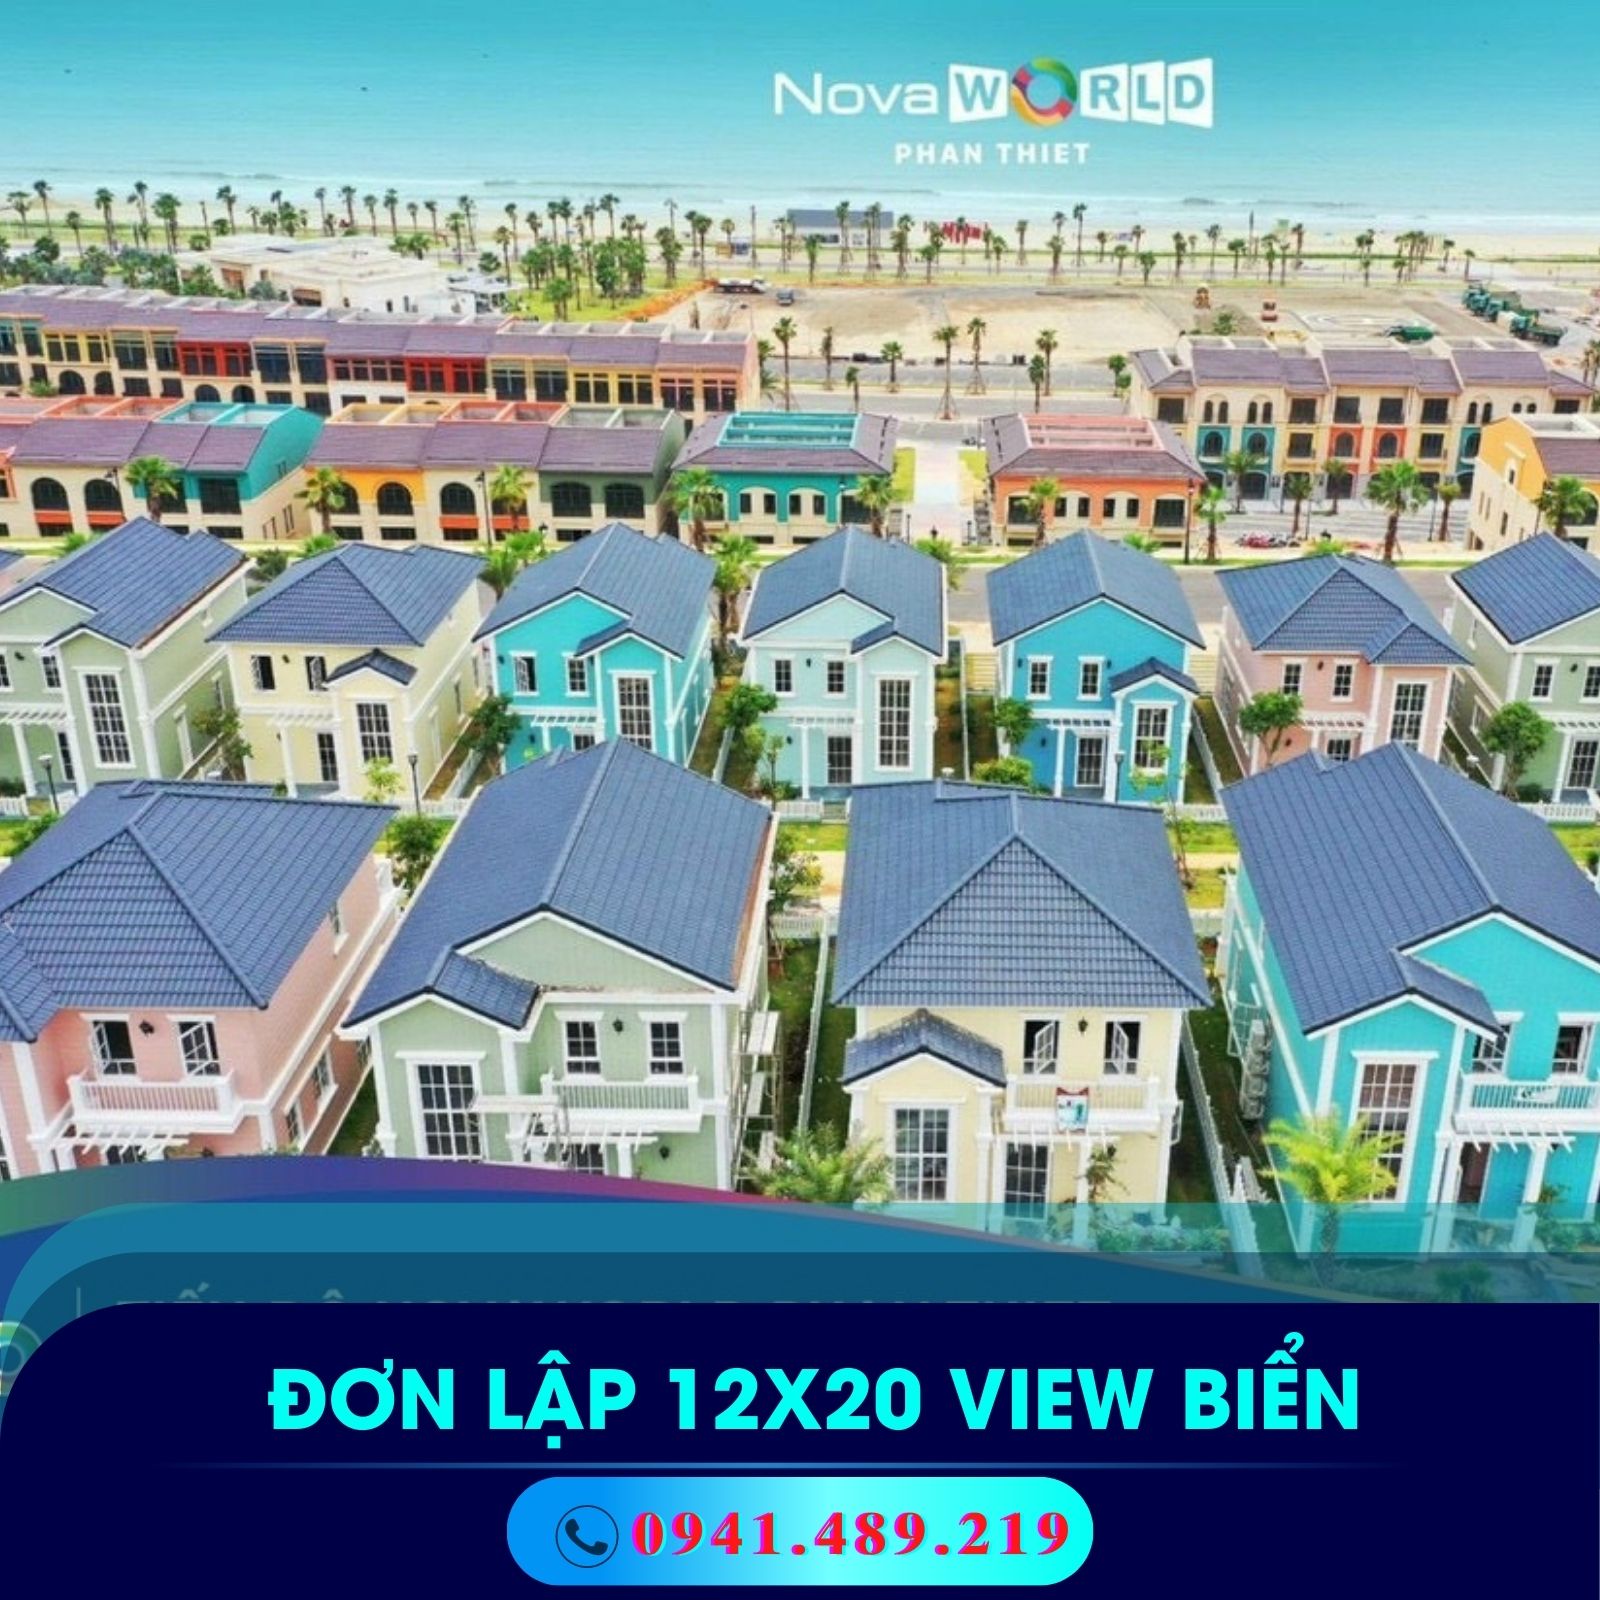 mẫu nhà biệt thự view biển novaworld phan thiết 12x20